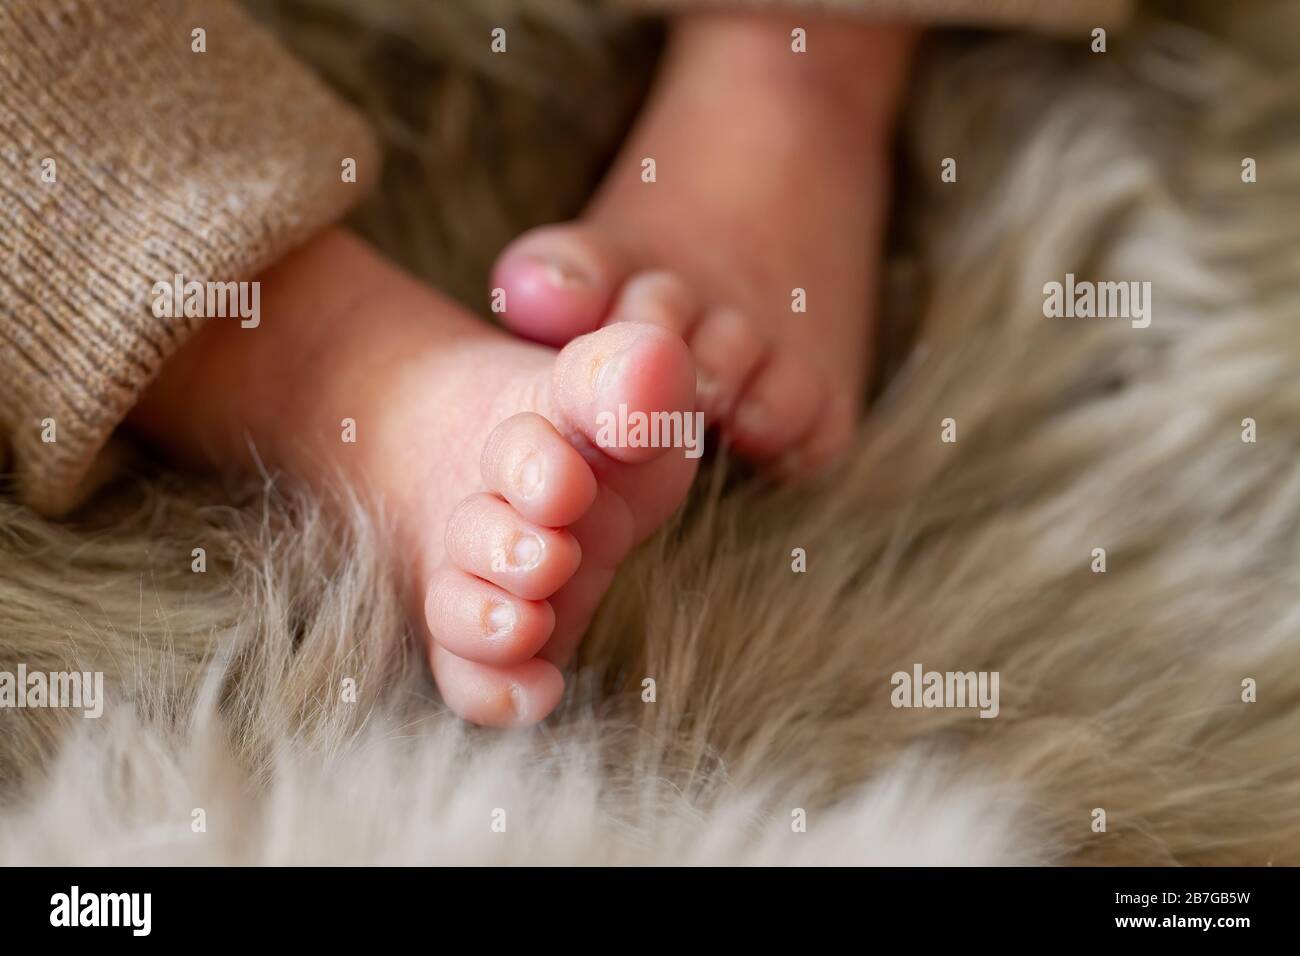 Pequeñas feet de un recién nacido (una semana de edad) Foto de stock